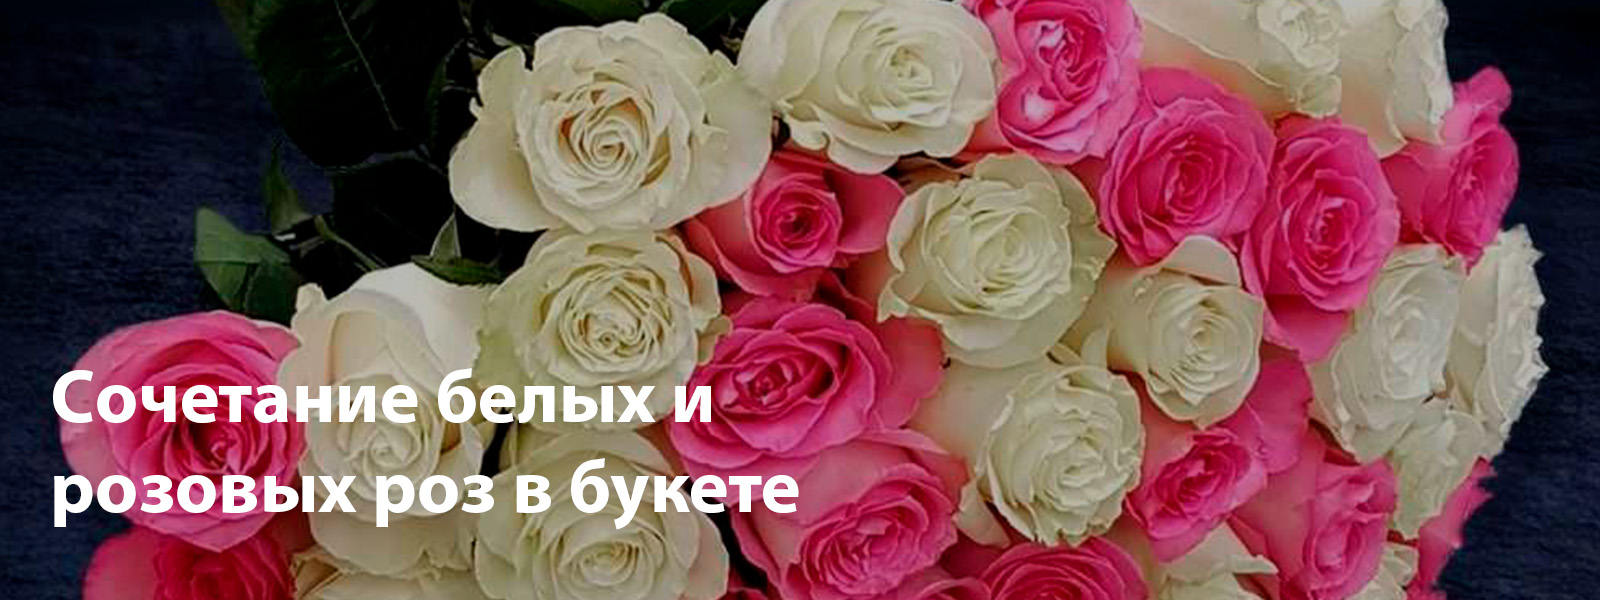 Cочетание белых и розовых роз в букете